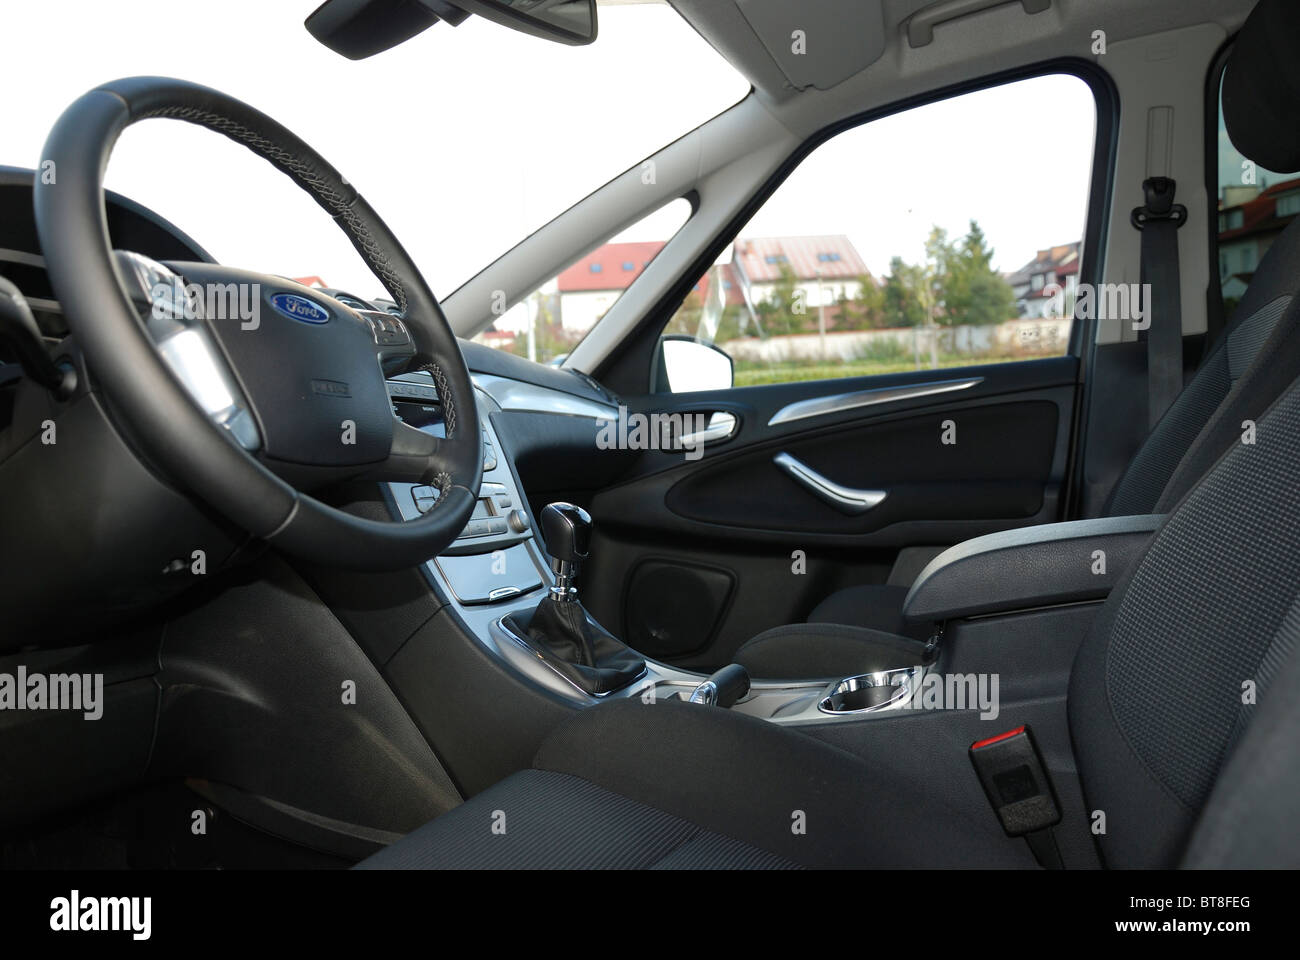 Ford S-MAX 2.0 TDCI - 2006 - nero metallizzato - cinque porte (5D) - Popolare tedesco MPV (minivan) - cabina, interno Foto Stock